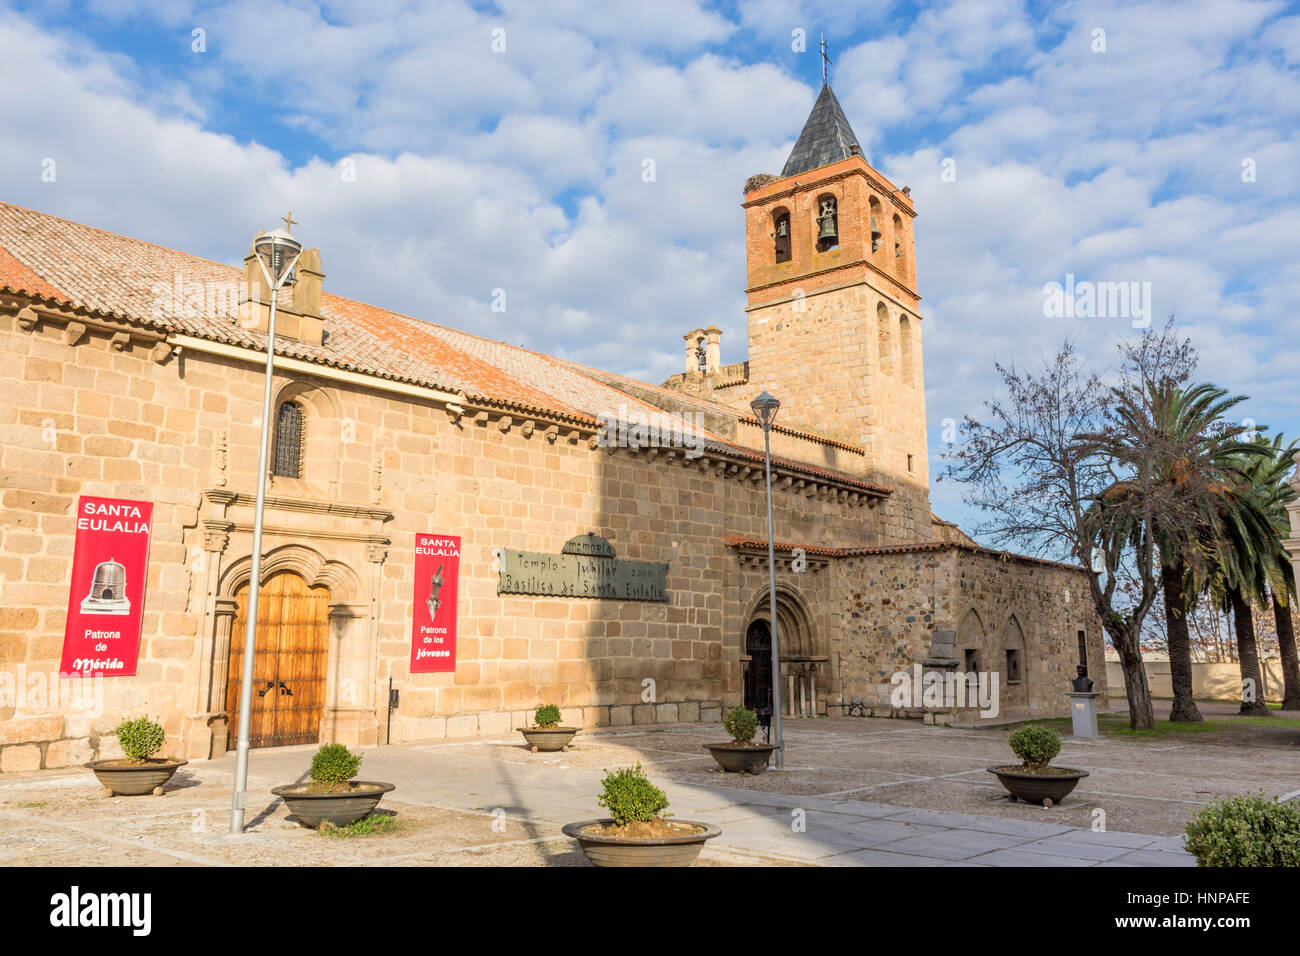 Merida, provincia di Badajoz, Estremadura, Spagna. Basilica de Santa Eulalia, un giovane cristiano romano martirizzato nel Emerita, giorno moderno a Merida. Foto Stock